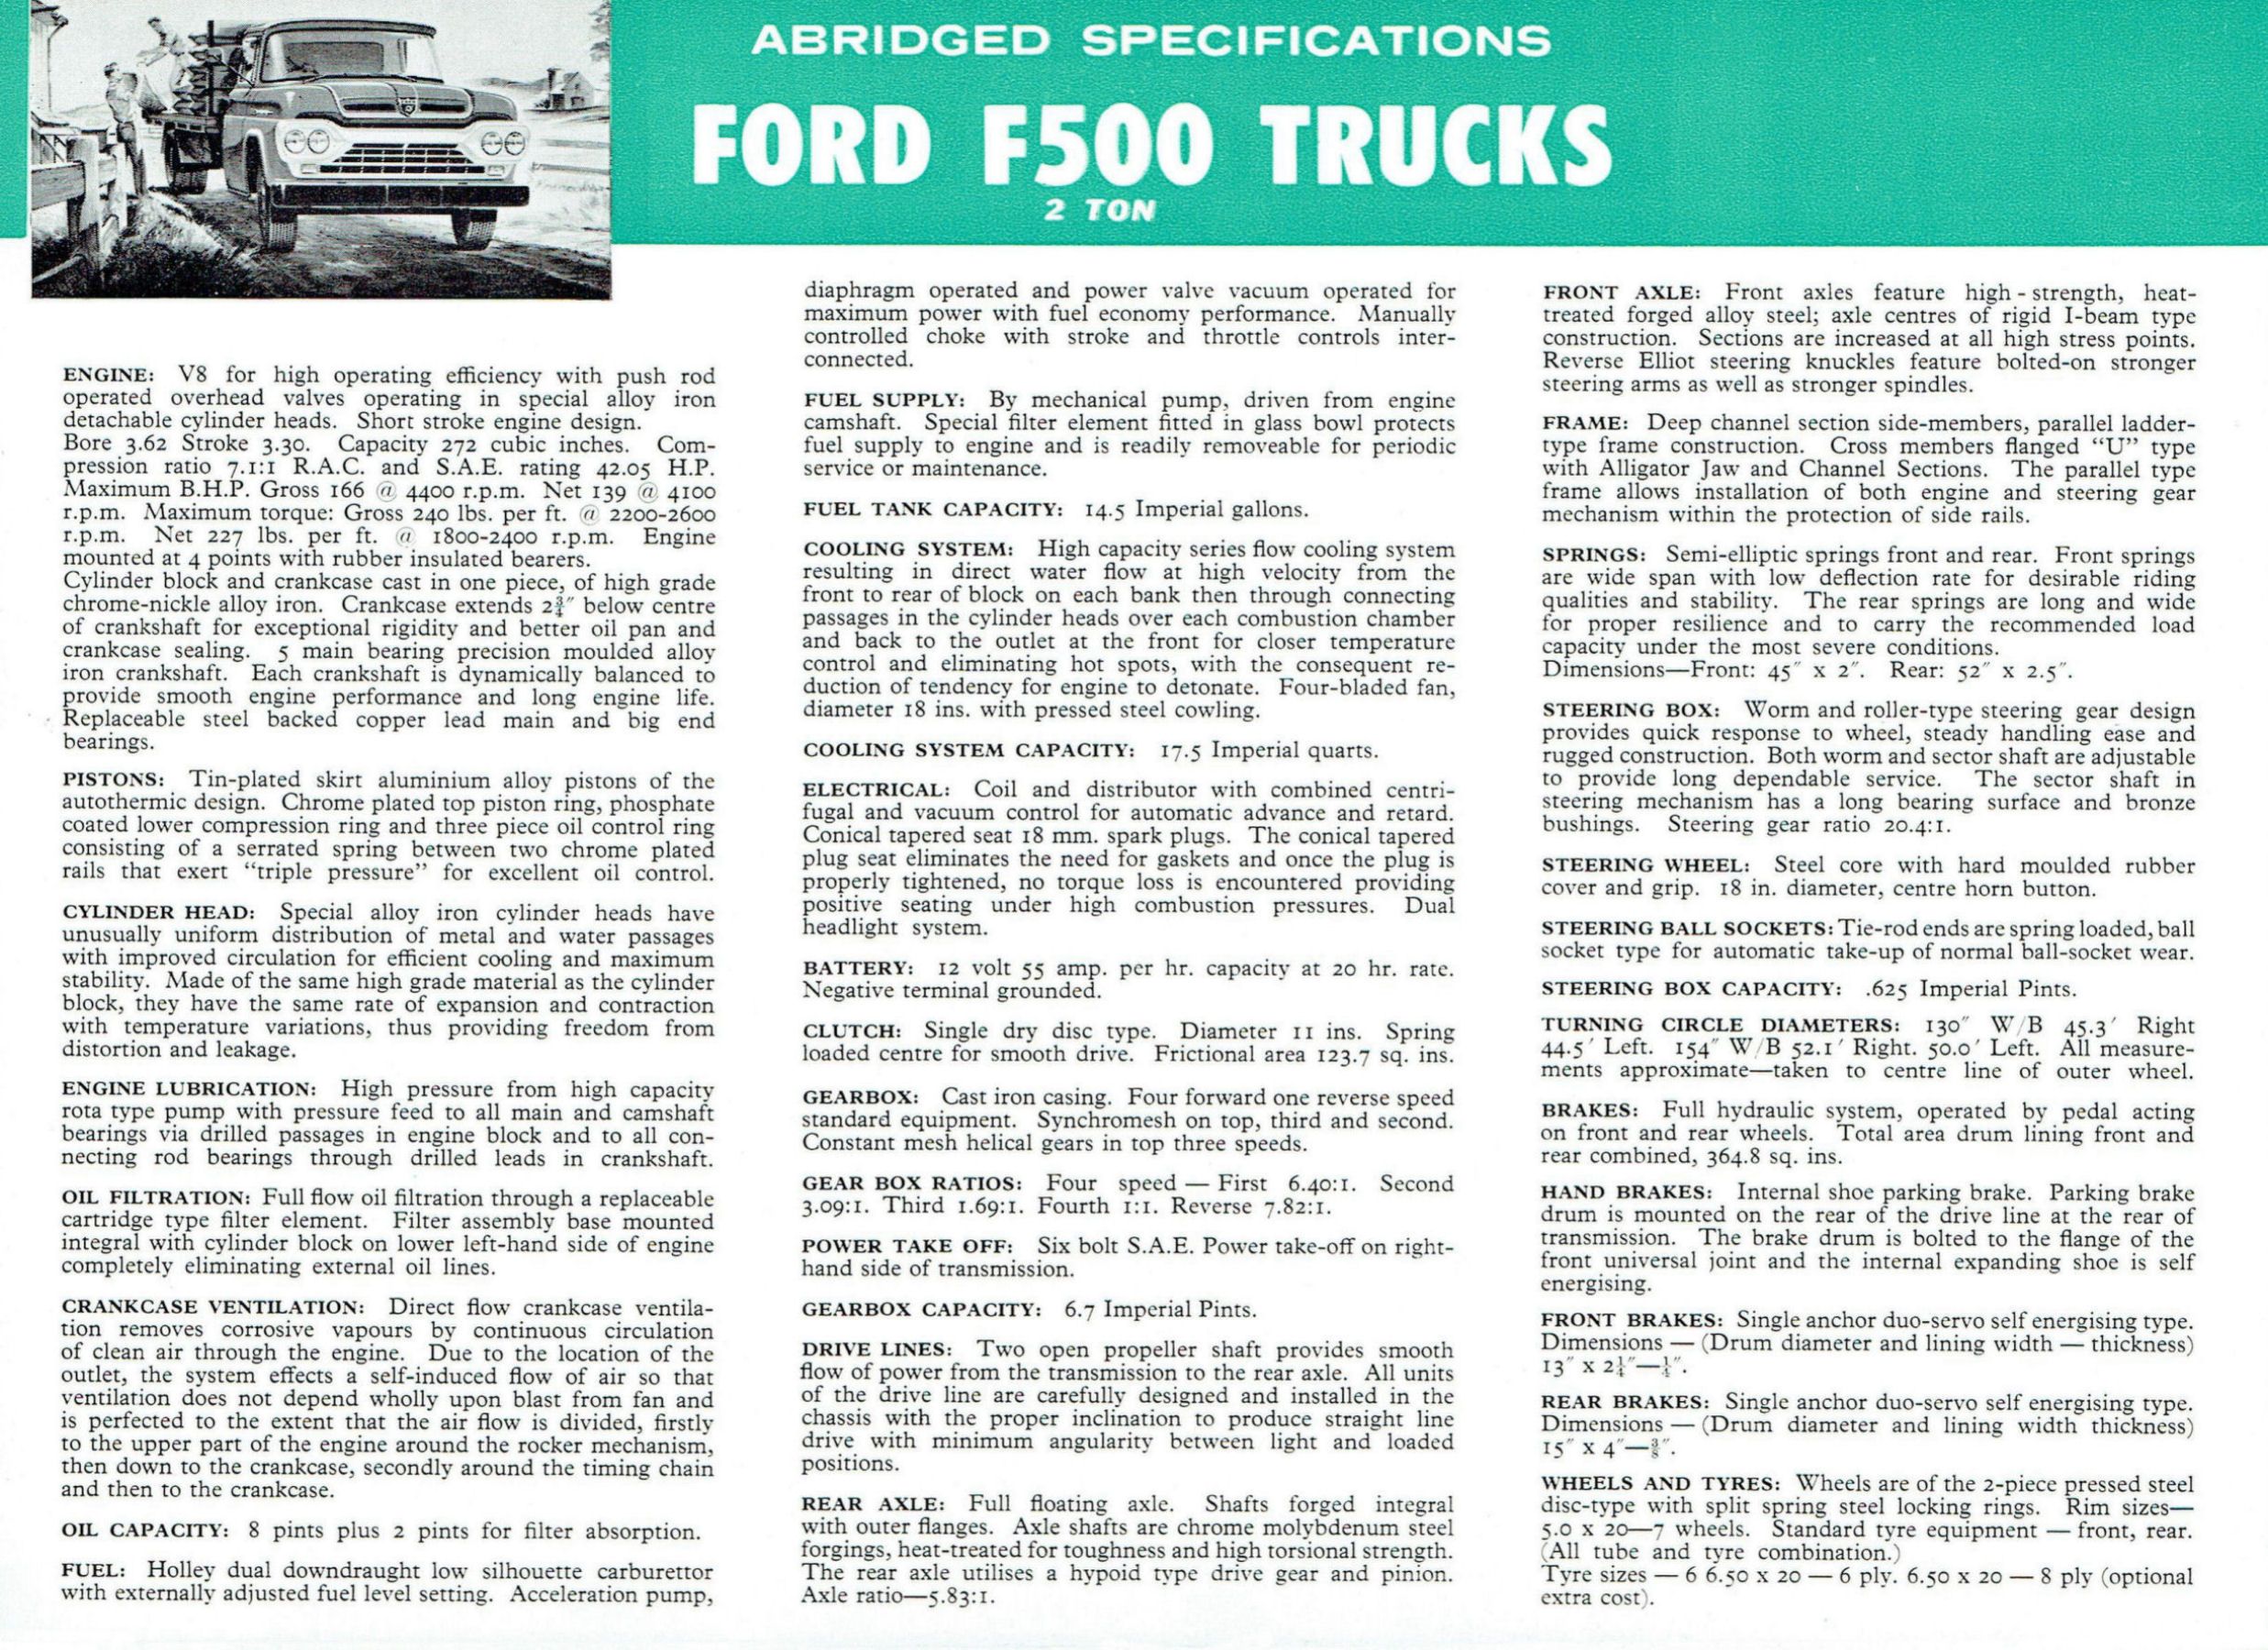 1960 Ford F500 2 ton Trucks (Aus)-05